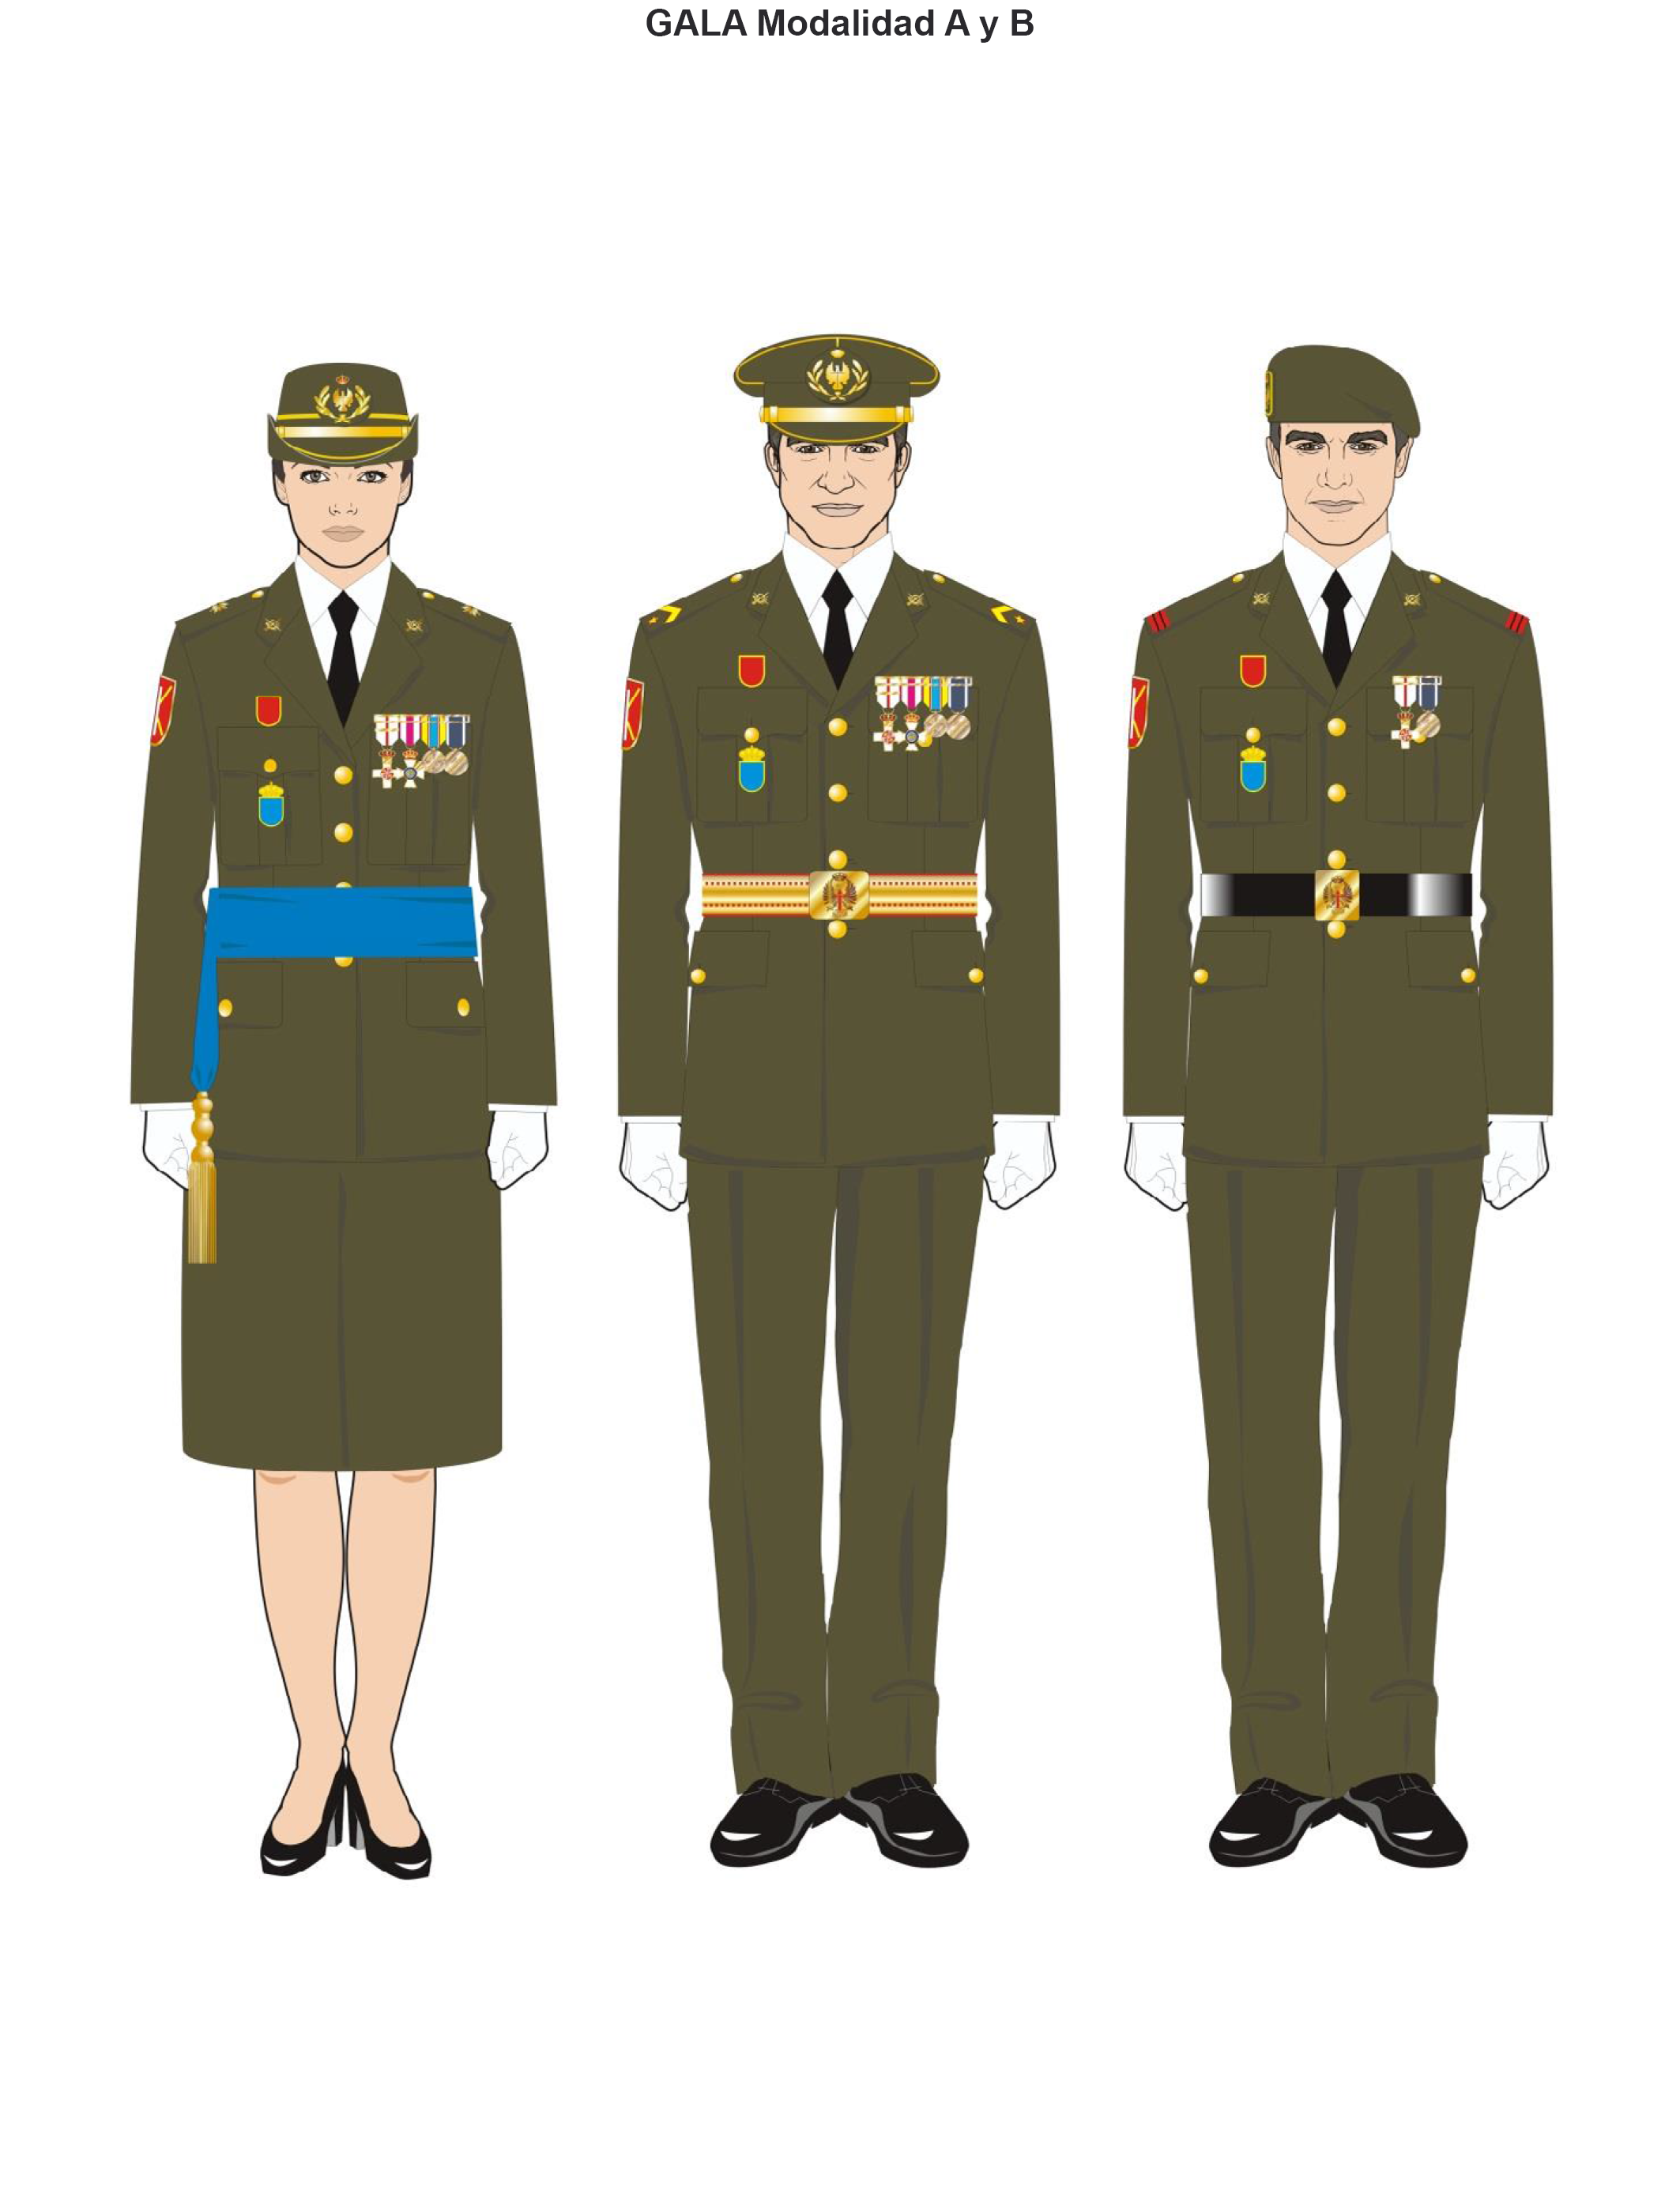 BOE.es - BOE-A-2016-10303 Orden DEF/1756/2016, de 28 de octubre, por la que  se aprueban las normas de uniformidad de las Fuerzas Armadas.